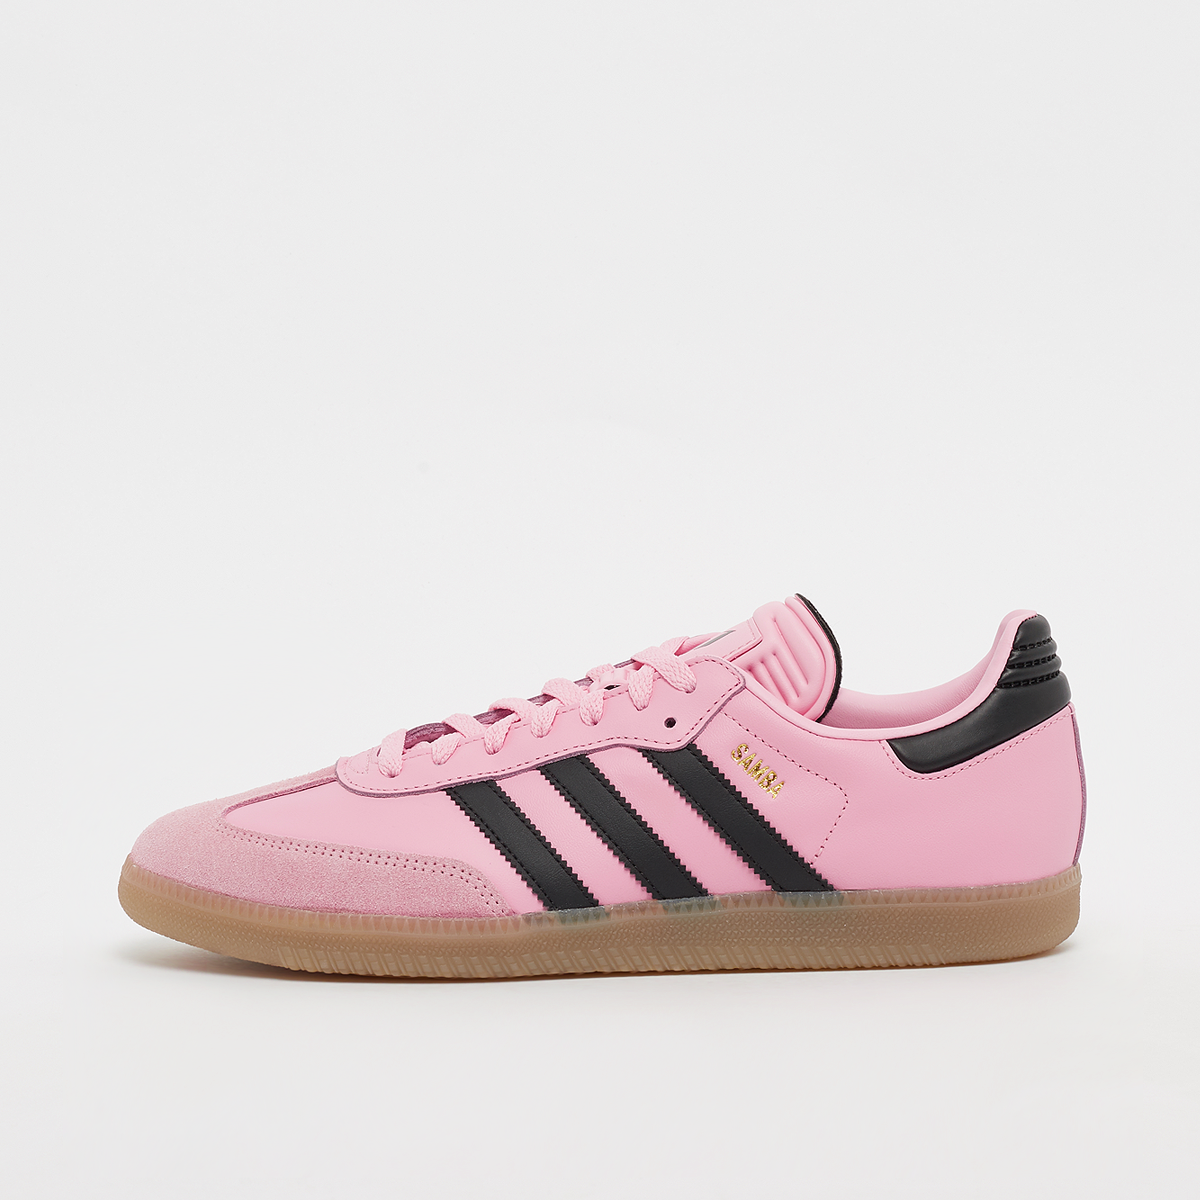 Sneaker Samba Messi, adidas Originals, Footwear, pink/black, taille: 36 2/3